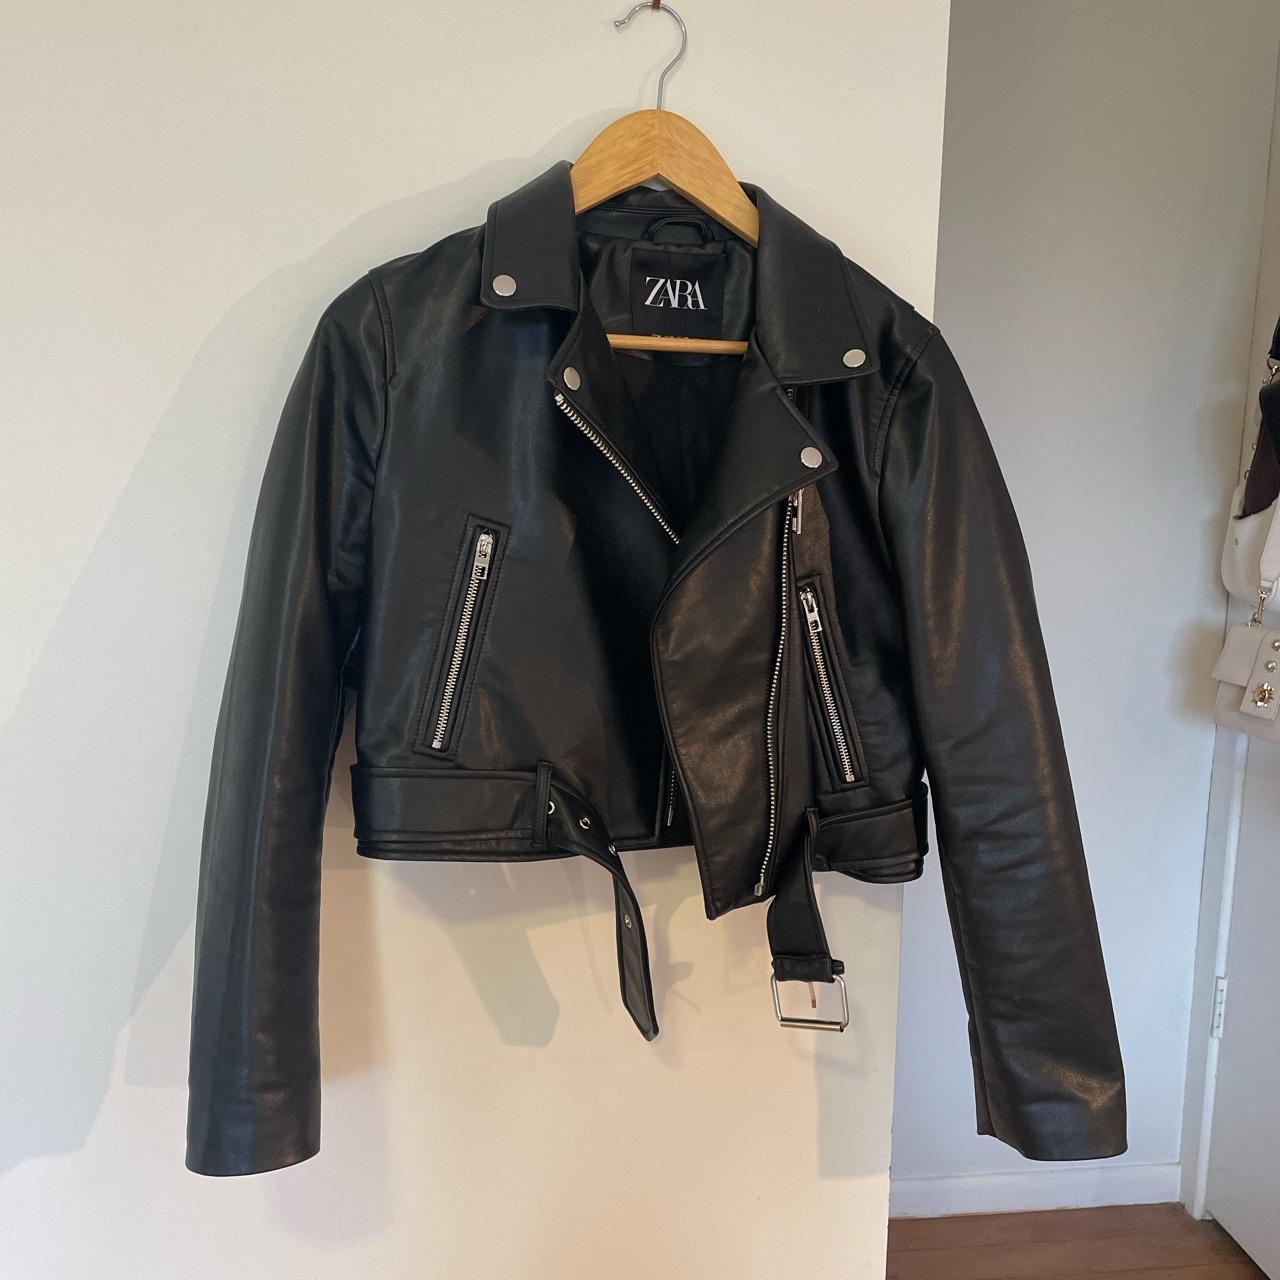 Zara Black Leather Jacket (fake leather) size... - Depop